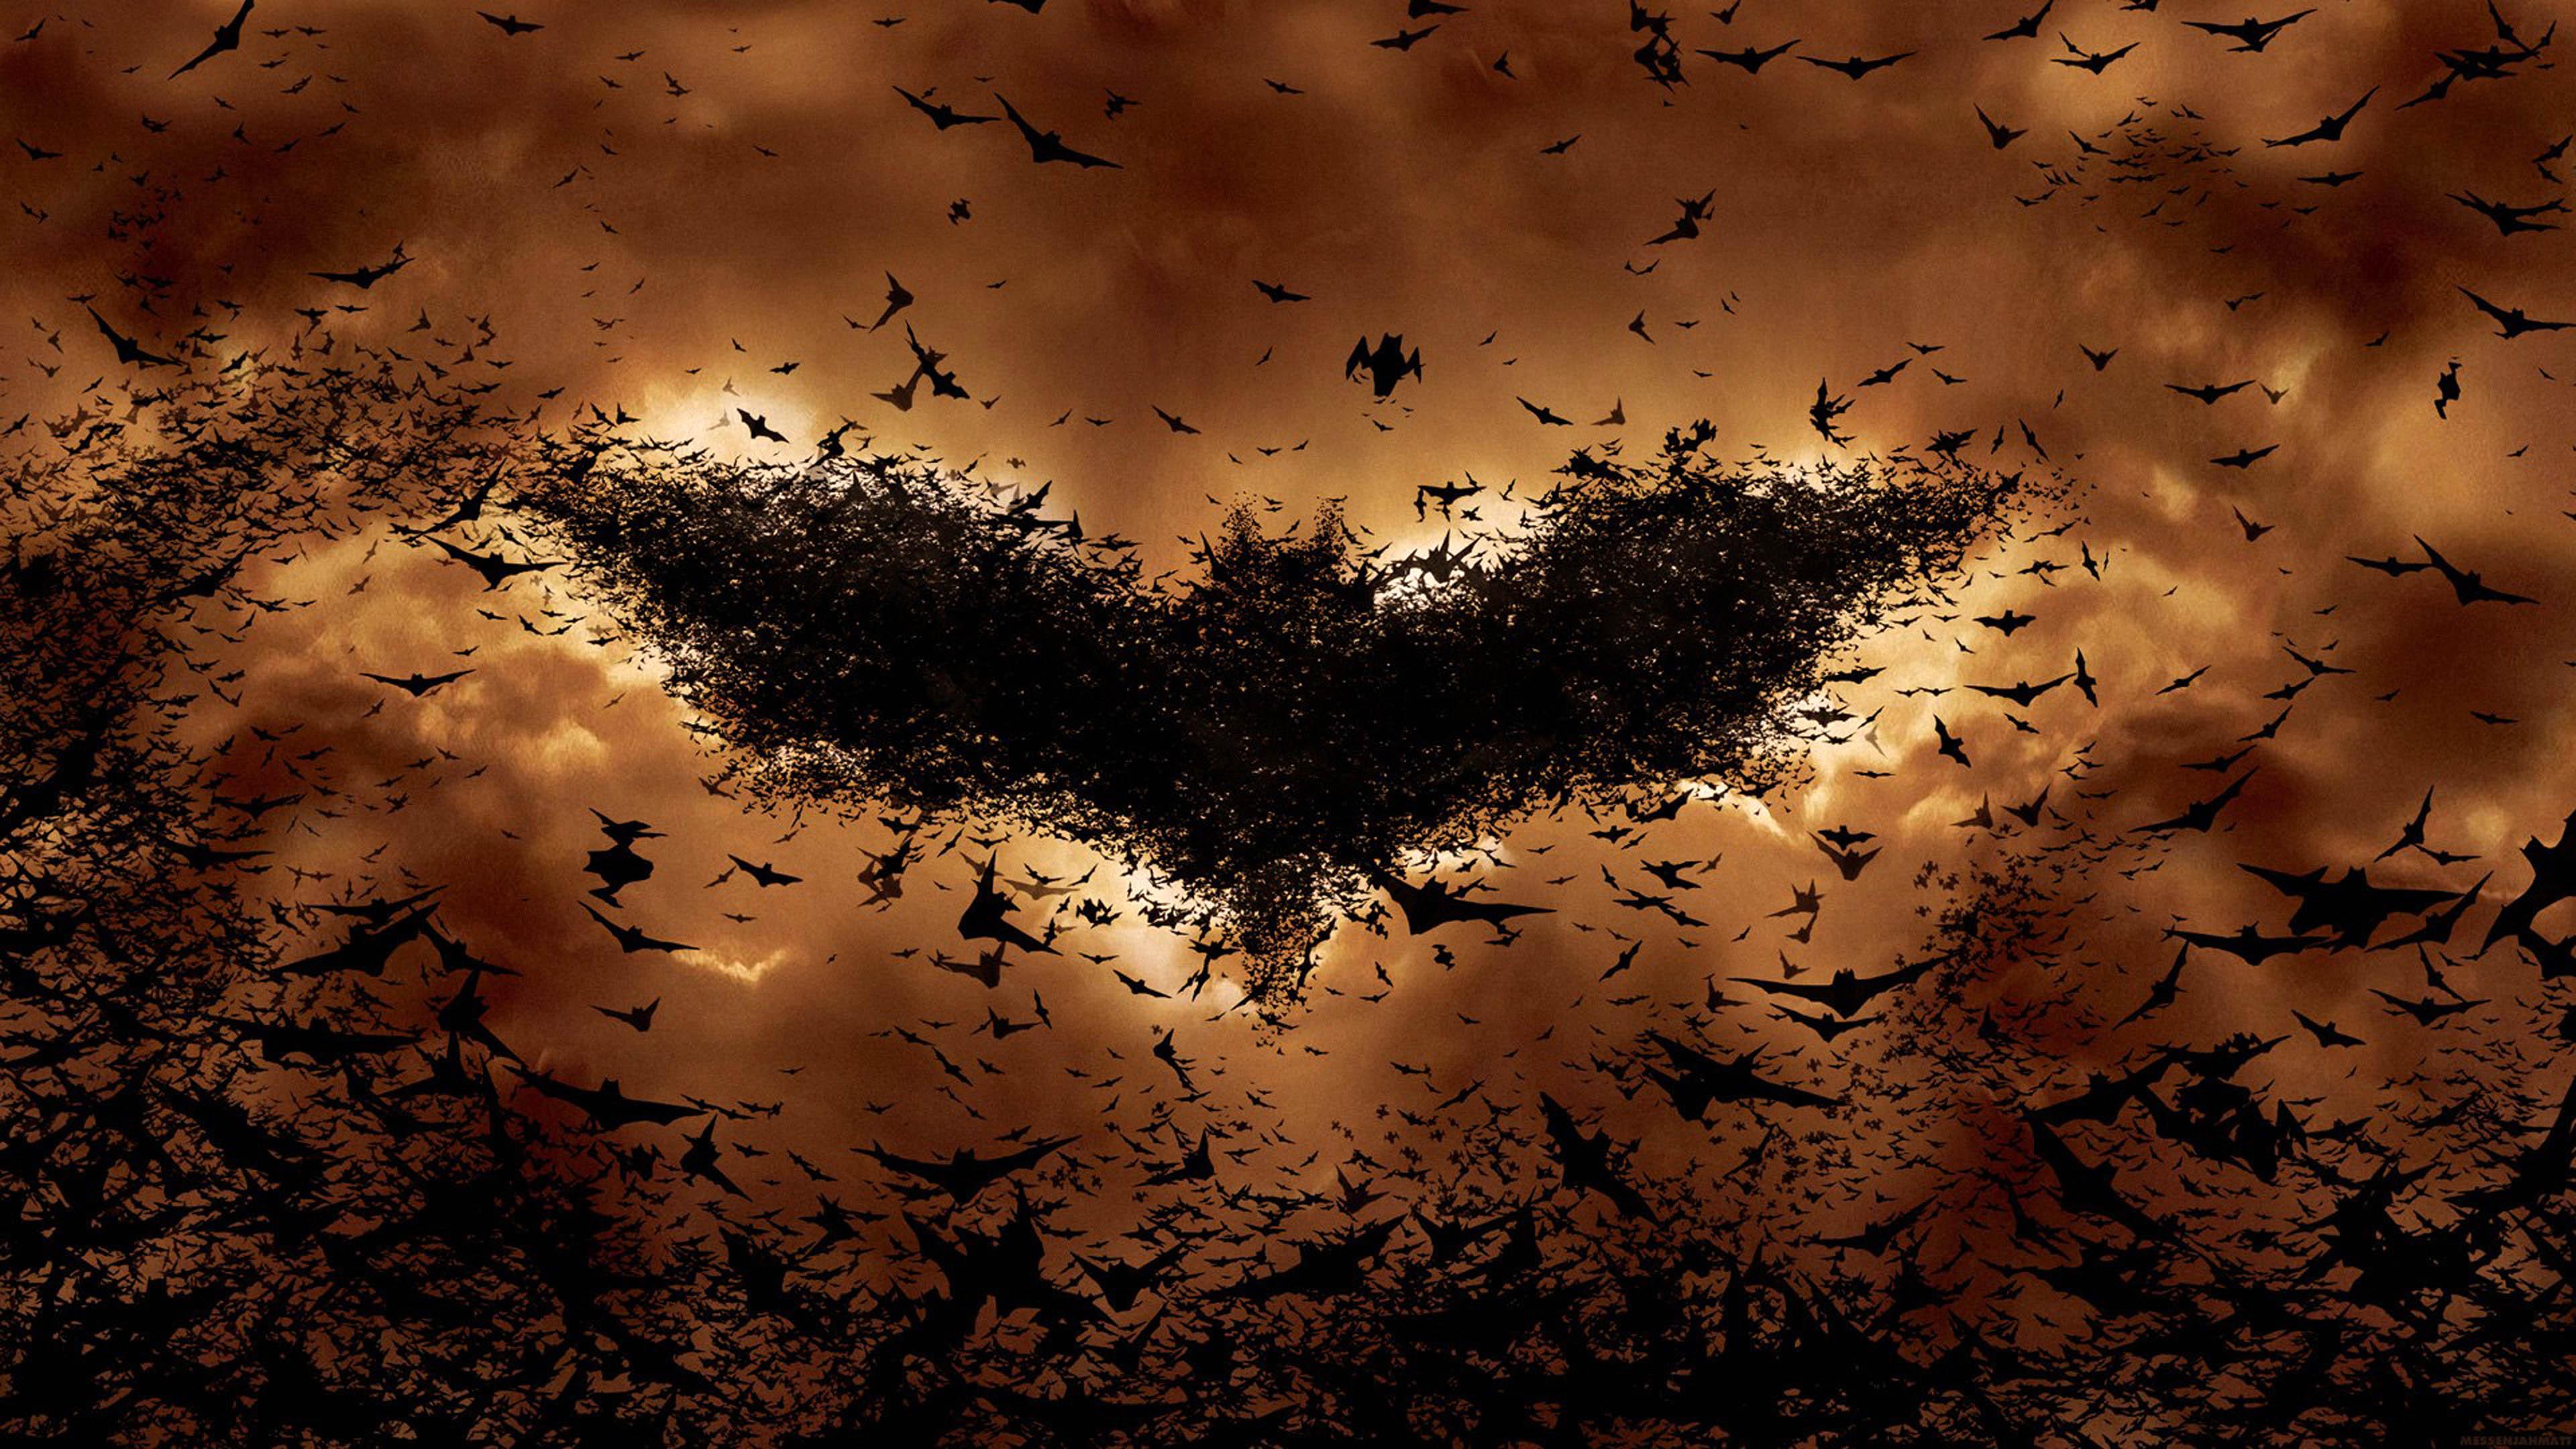 3840 x 2160 · jpeg - Batman Begins Bat Symbol, HD Superheroes, 4k Wallpapers, Images ...